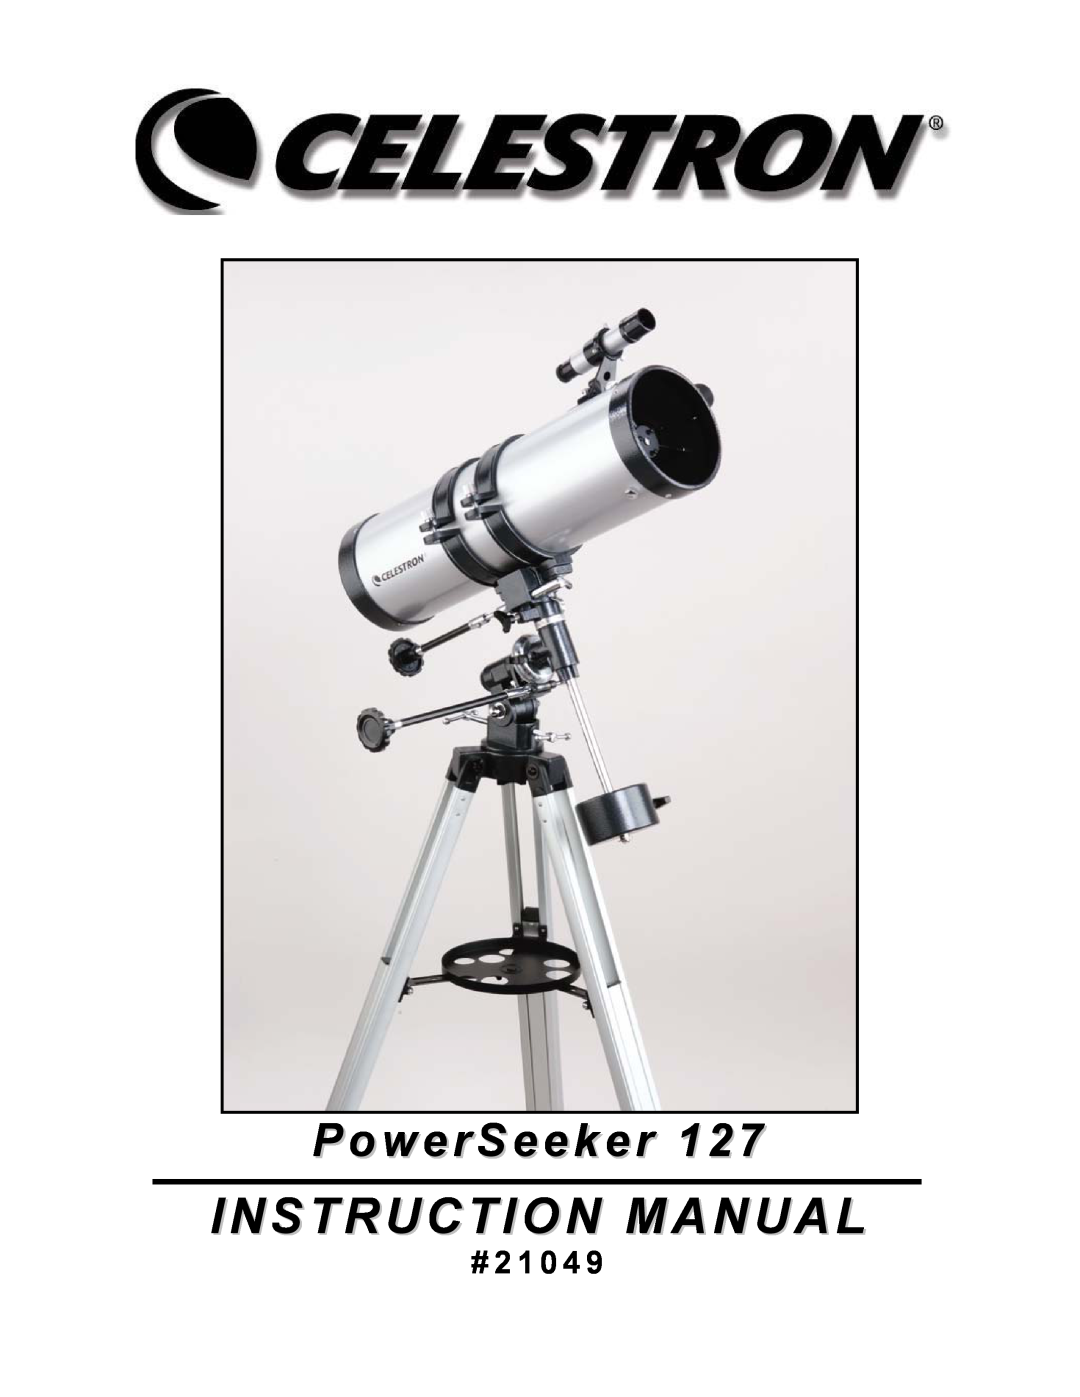 Celestron 127 manual PowerSeeker, # 2 1 